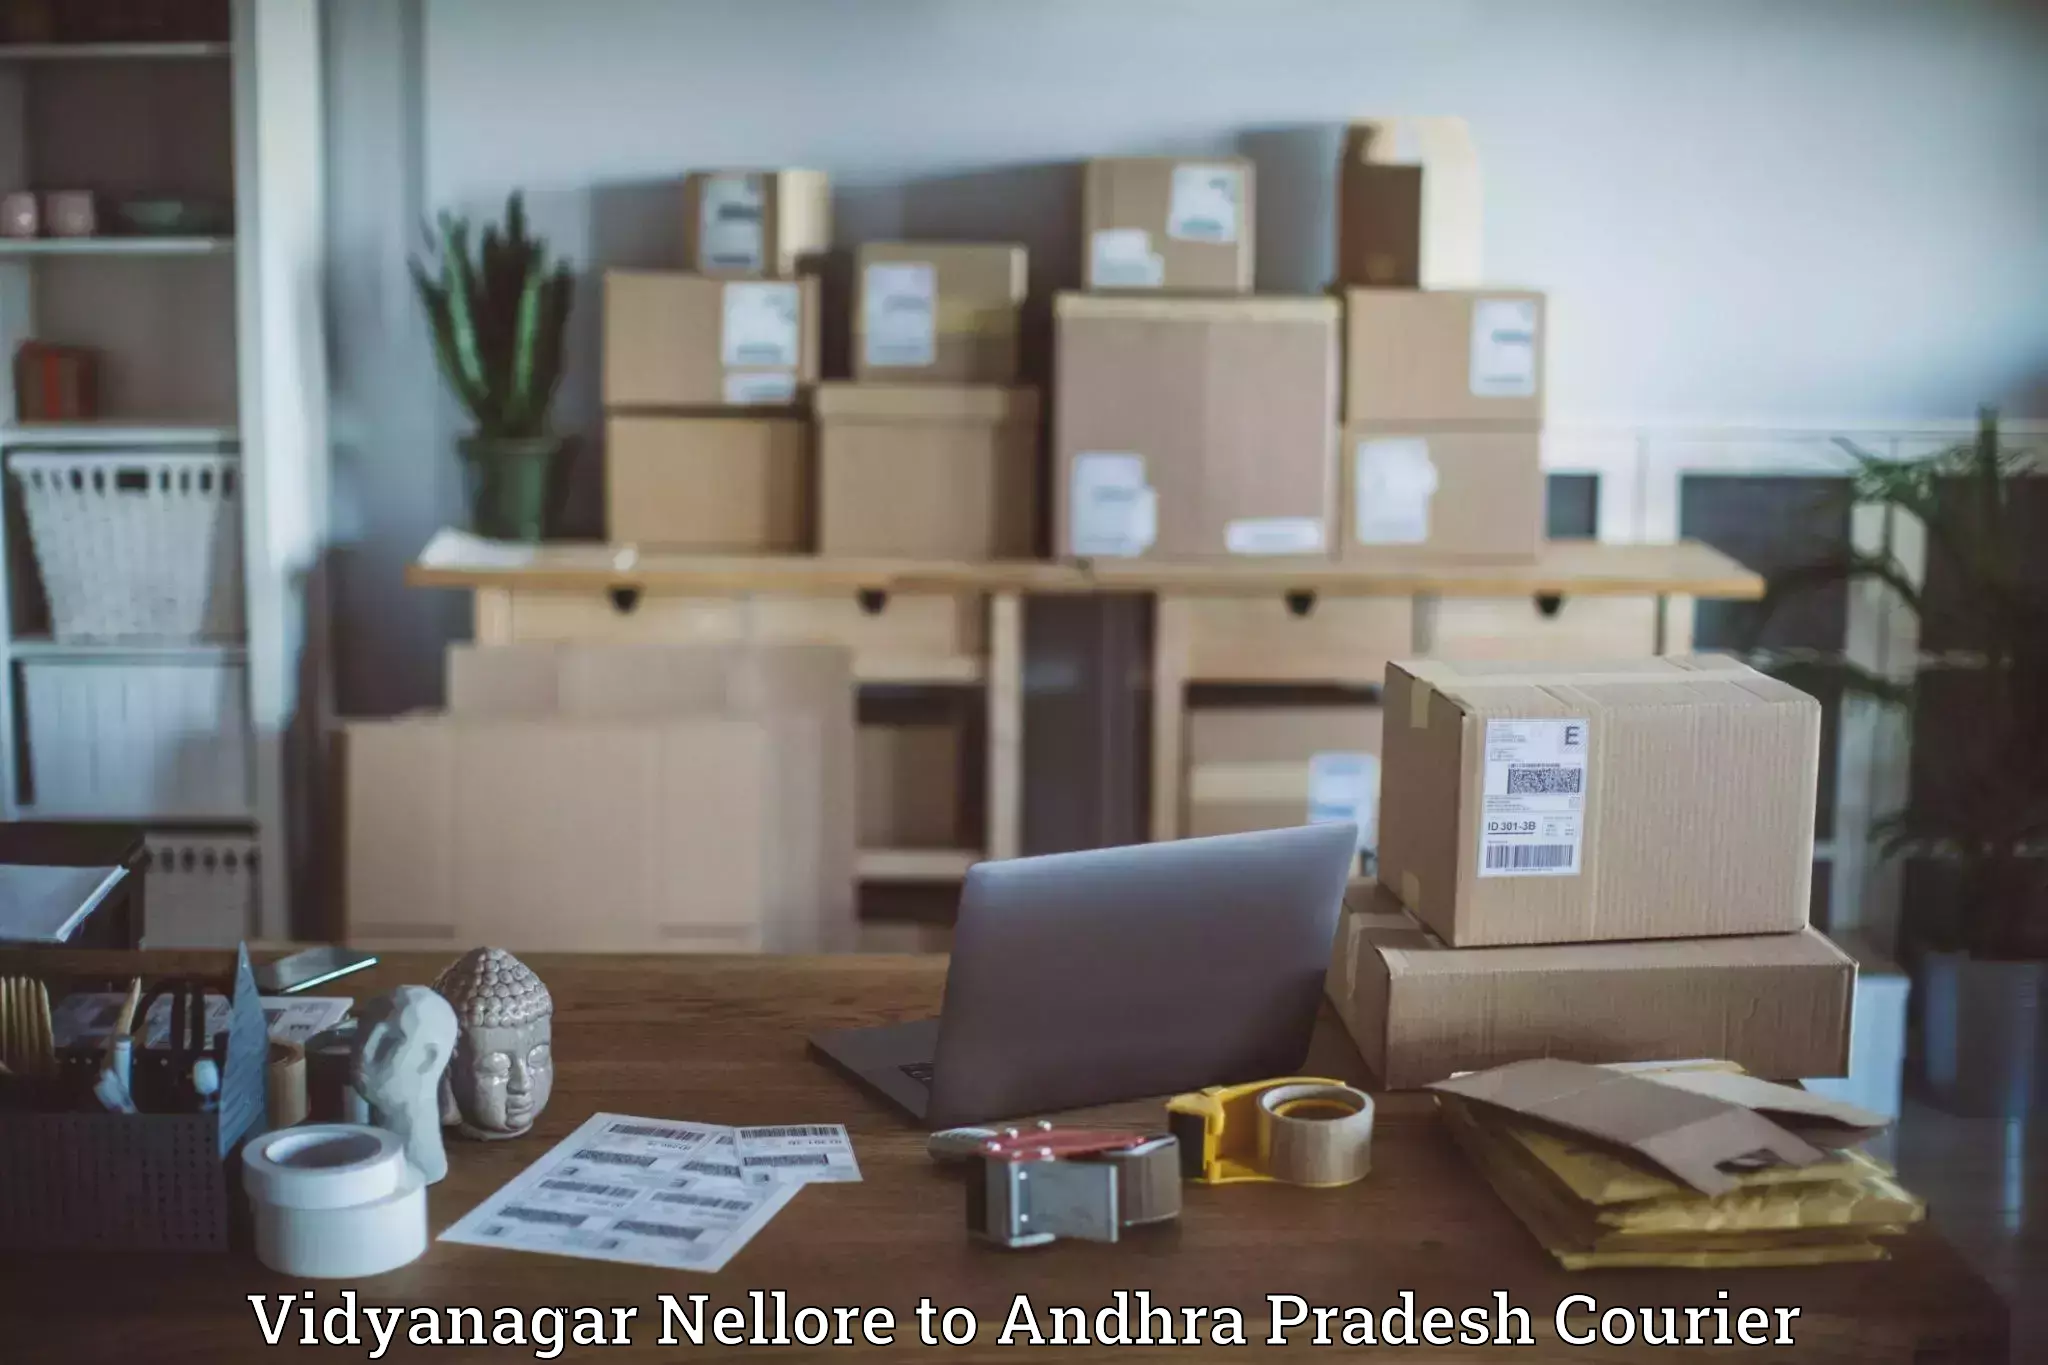 Residential courier service Vidyanagar Nellore to Rajayyapeta